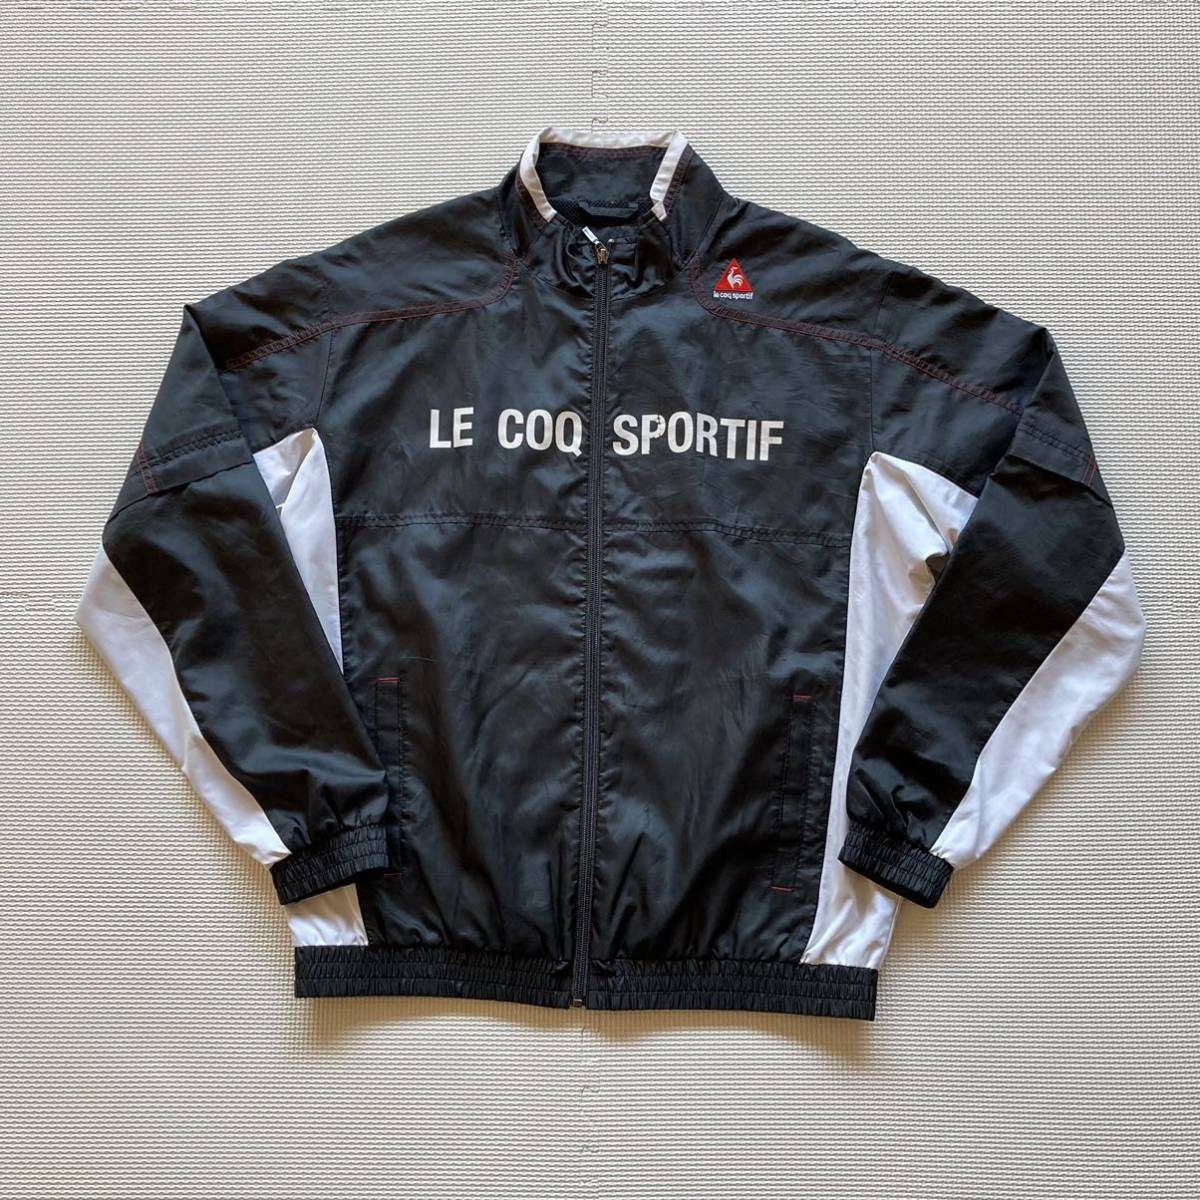 Le coq sportif GOLF ルコックスポルティフ ゴルフ 2WAY 袖着脱 ジャケット ウインドブレーカー LLの画像1